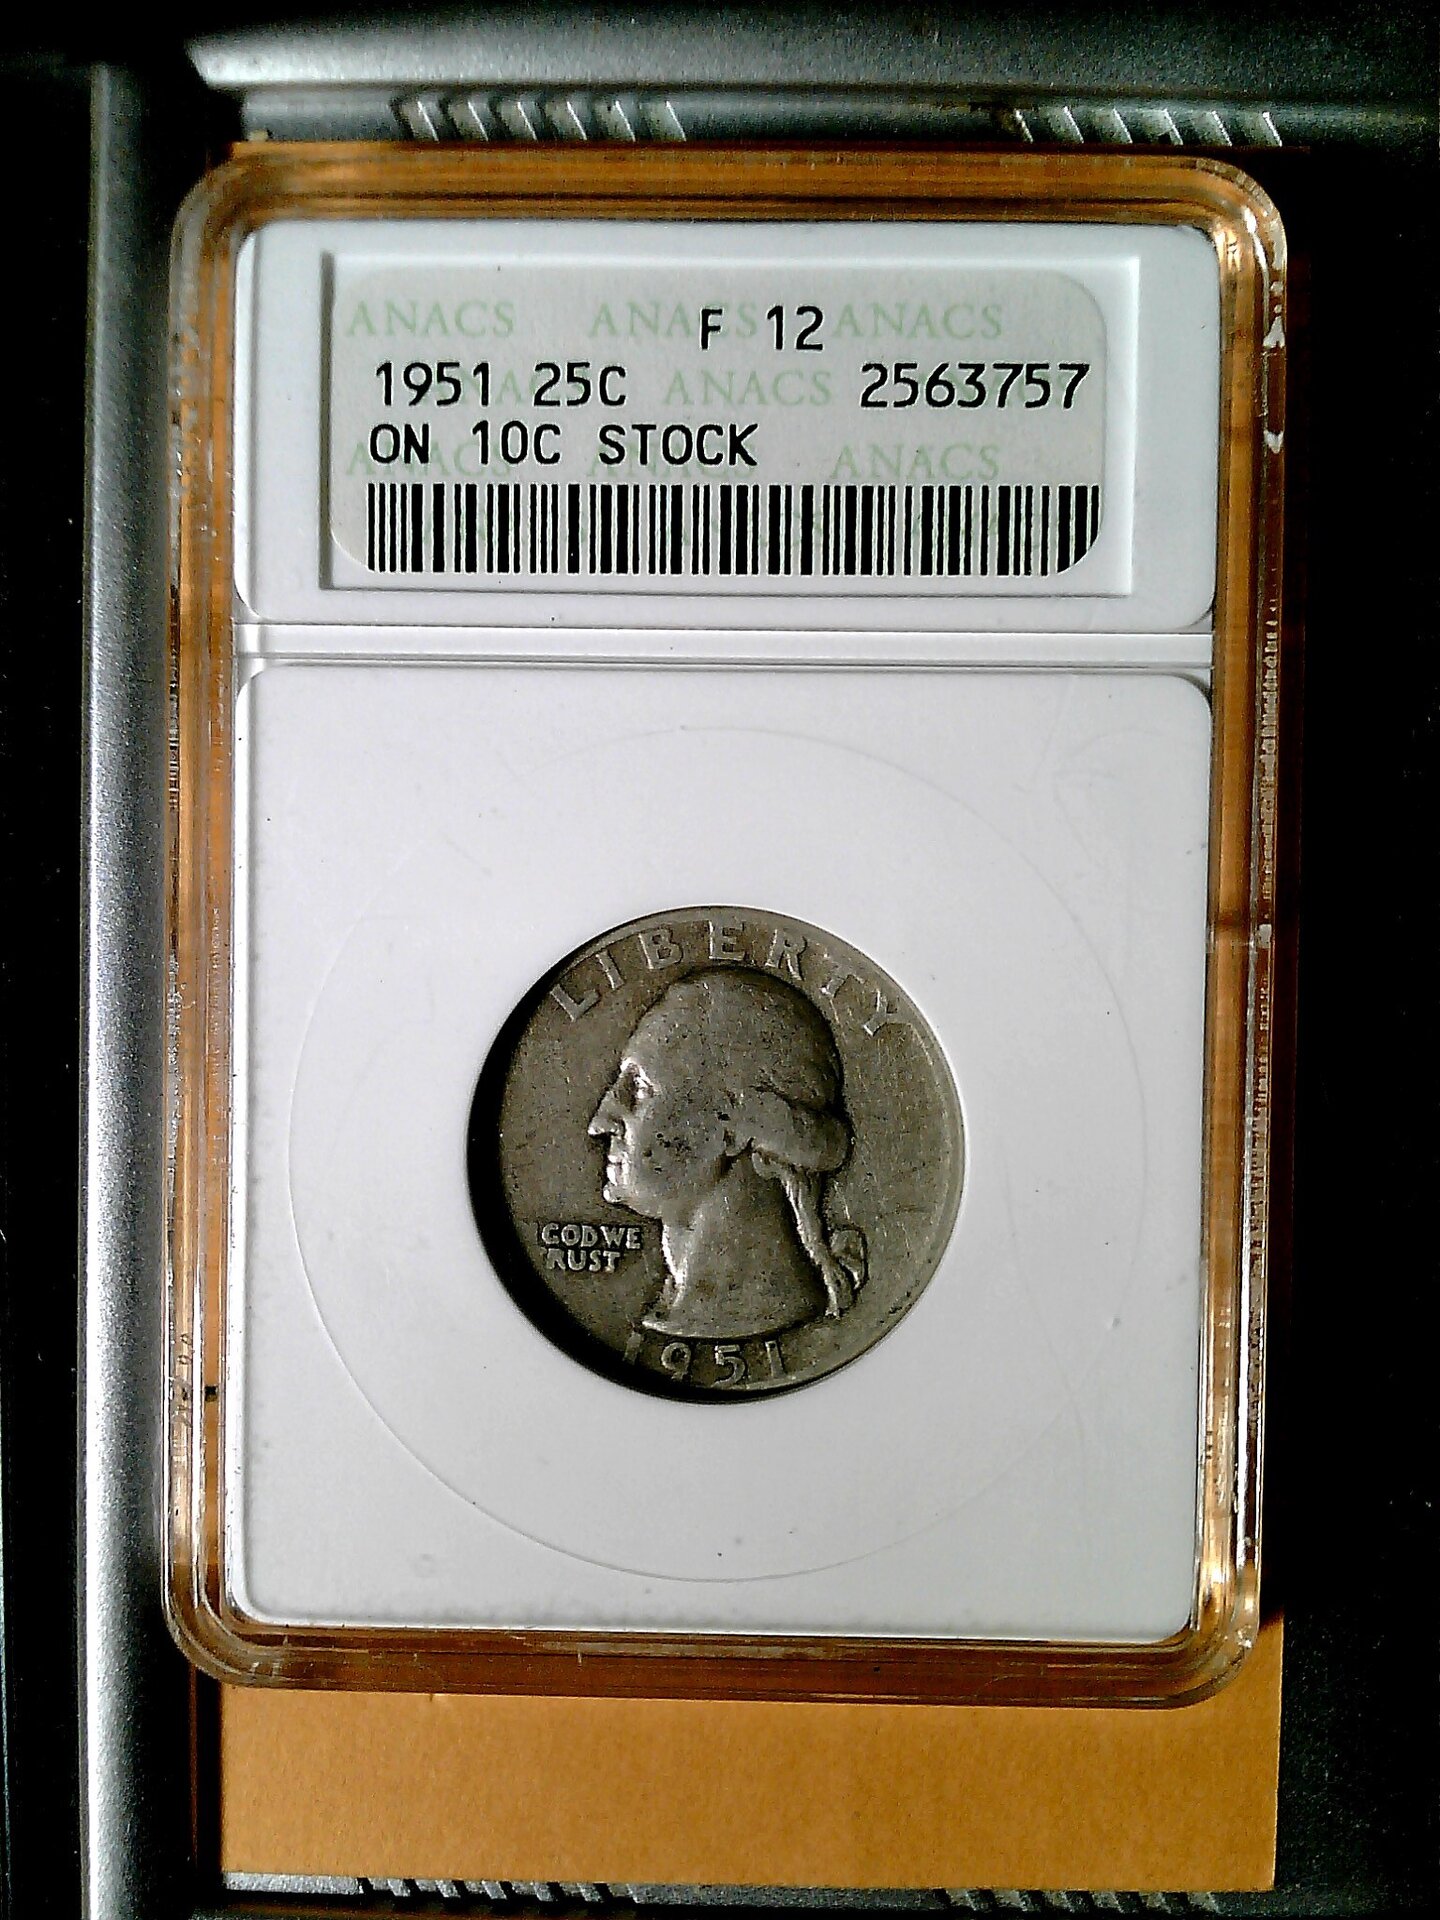 1951 quarter on dime stock.jpg